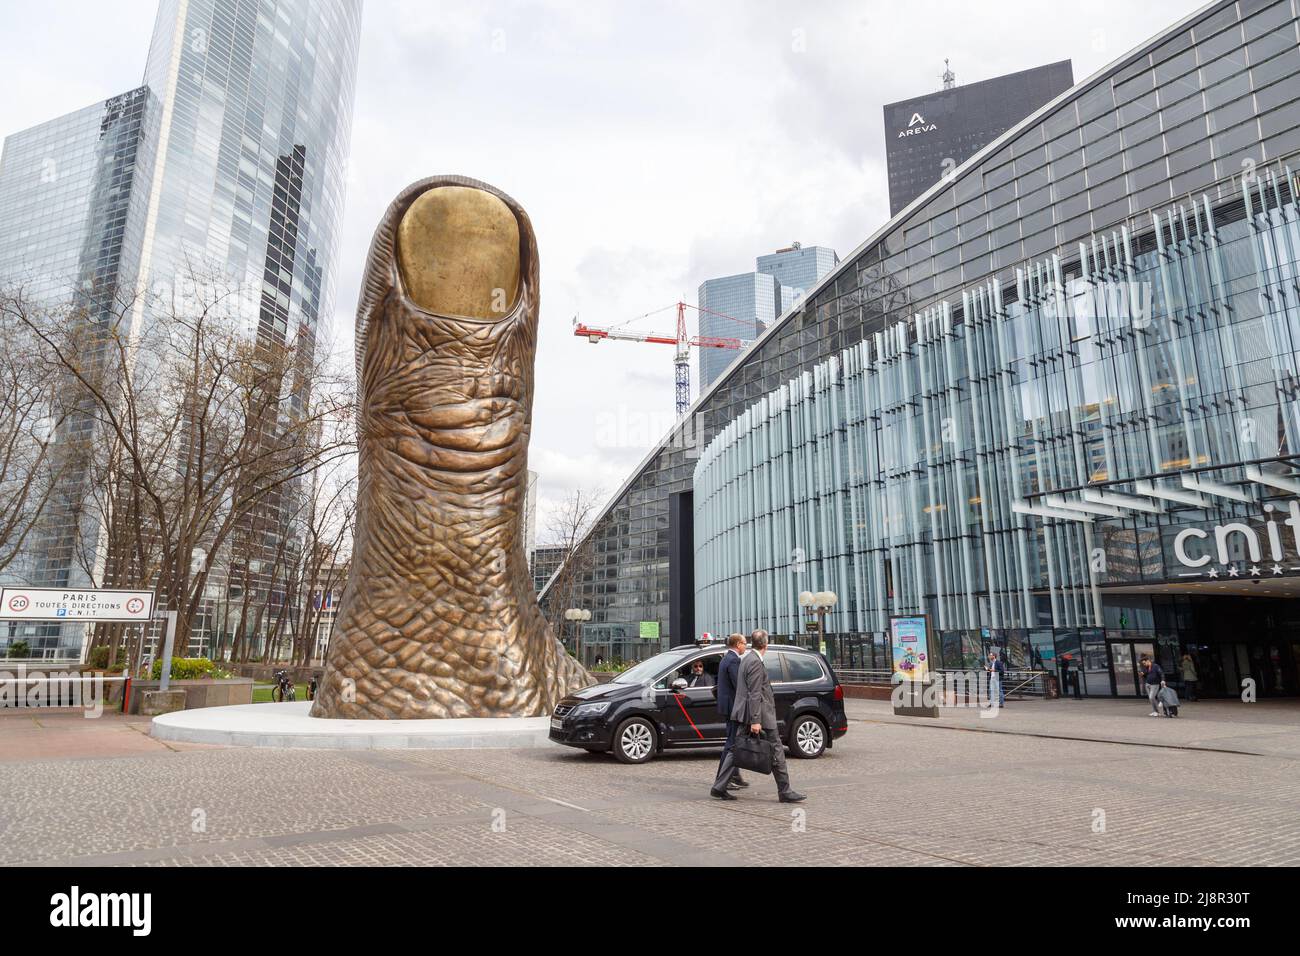 Paris, Frankreich, 30. März 2017: Große Finger oder riesige große Daumenskulptur oder Kunststatue in der Verteidigungslinie, in der Nähe des großen Bogens in Paris, Frankreich Stockfoto